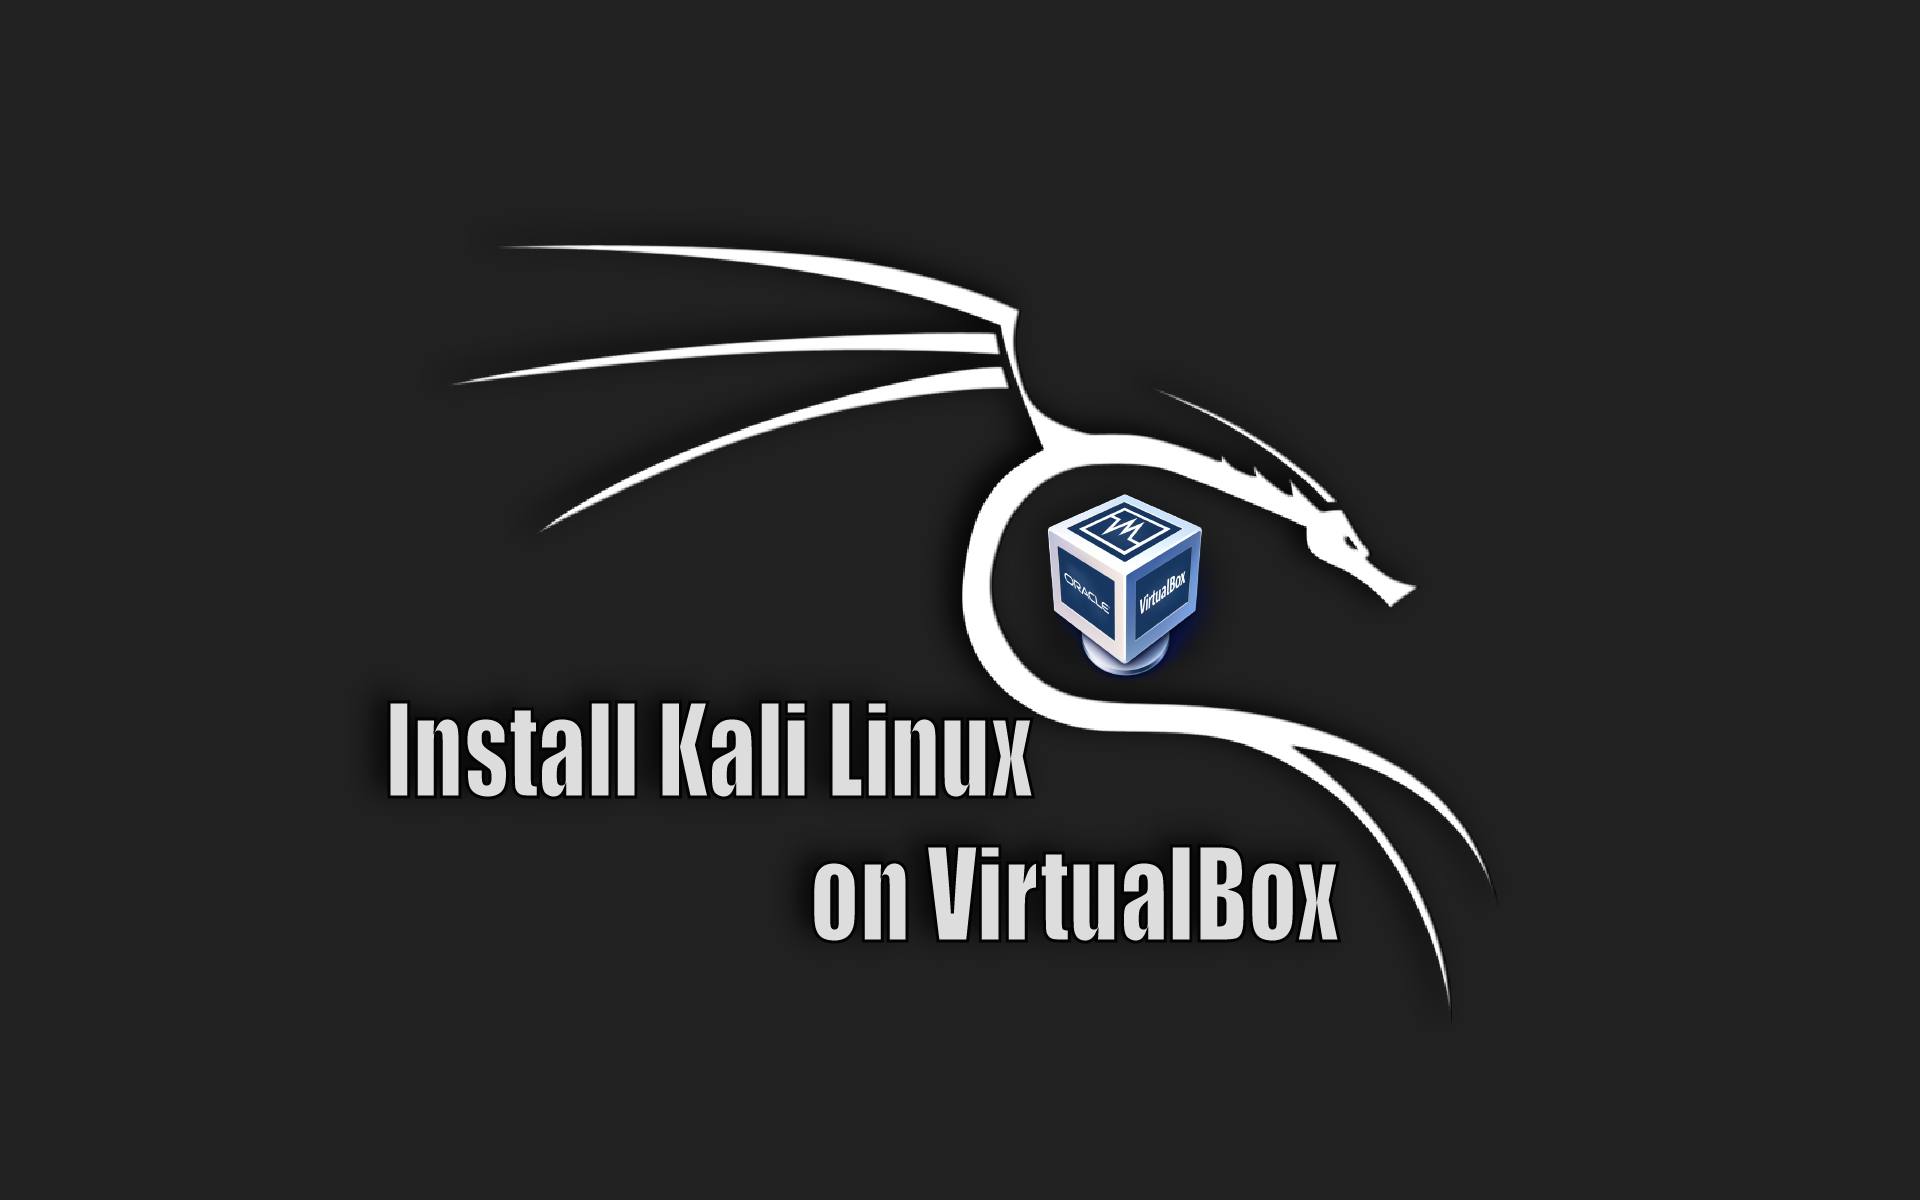 kali linux virtualbox image download